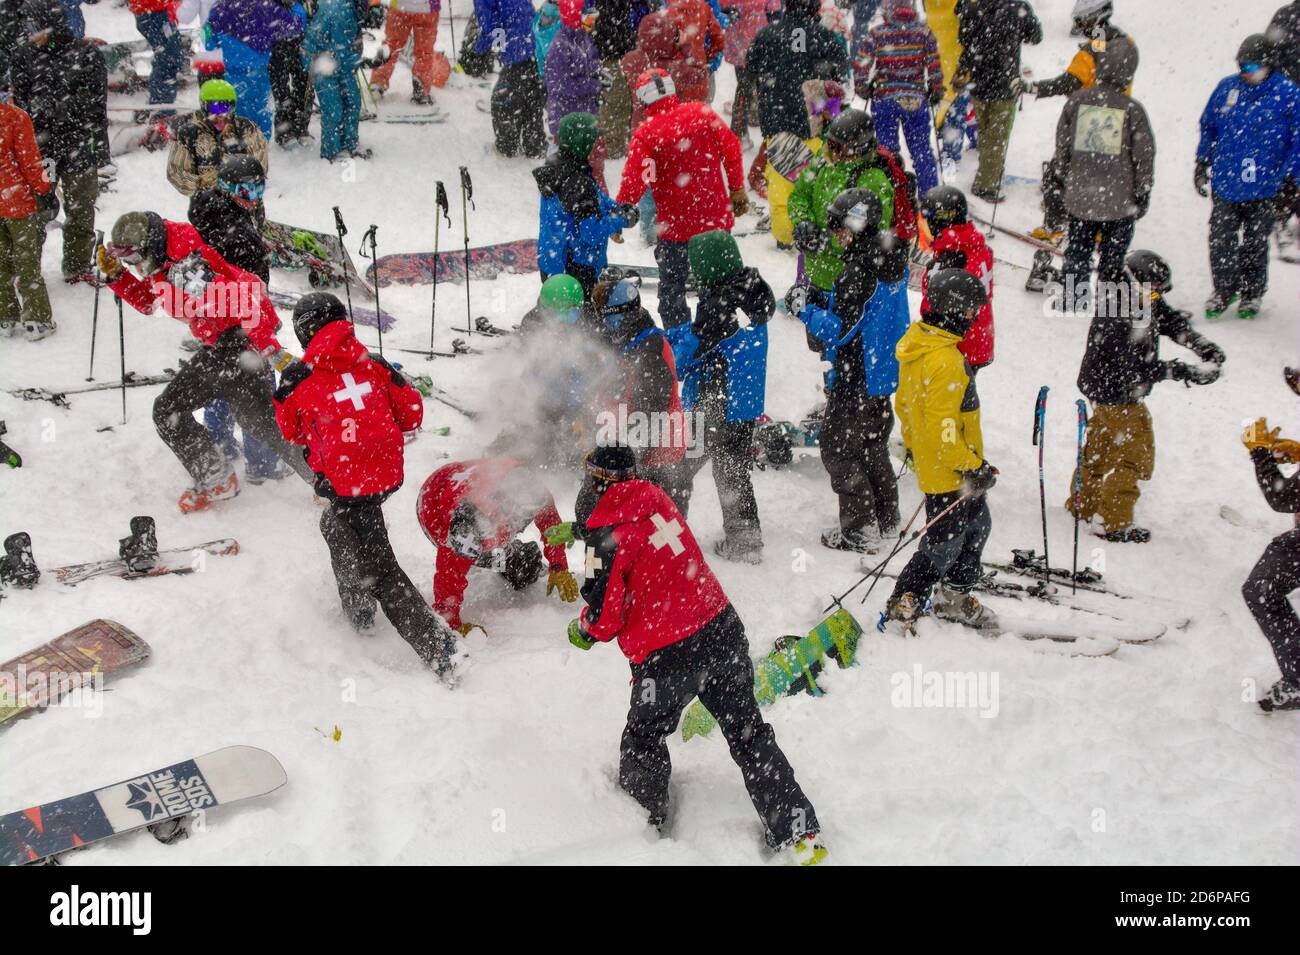 Combat de boules de neige dans une station de ski, la patrouille de ski lui donnant tout leur Banque D'Images